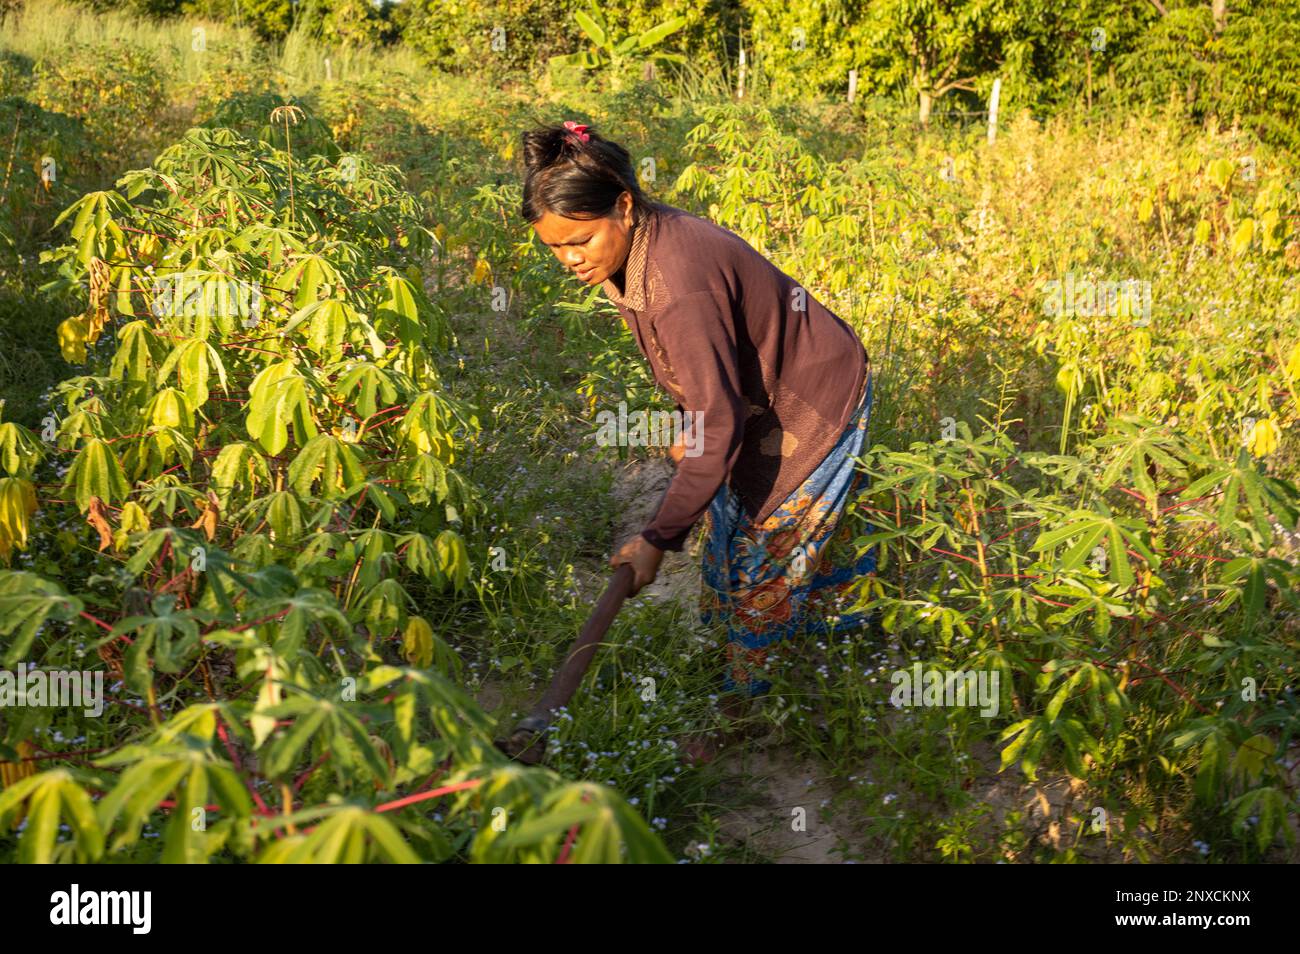 Eine Frau in einem ländlichen Dorf in der Provinz Siem Reap, Kambodscha, pflegt ihr Feld mit Kassava-Pflanzen. Stockfoto